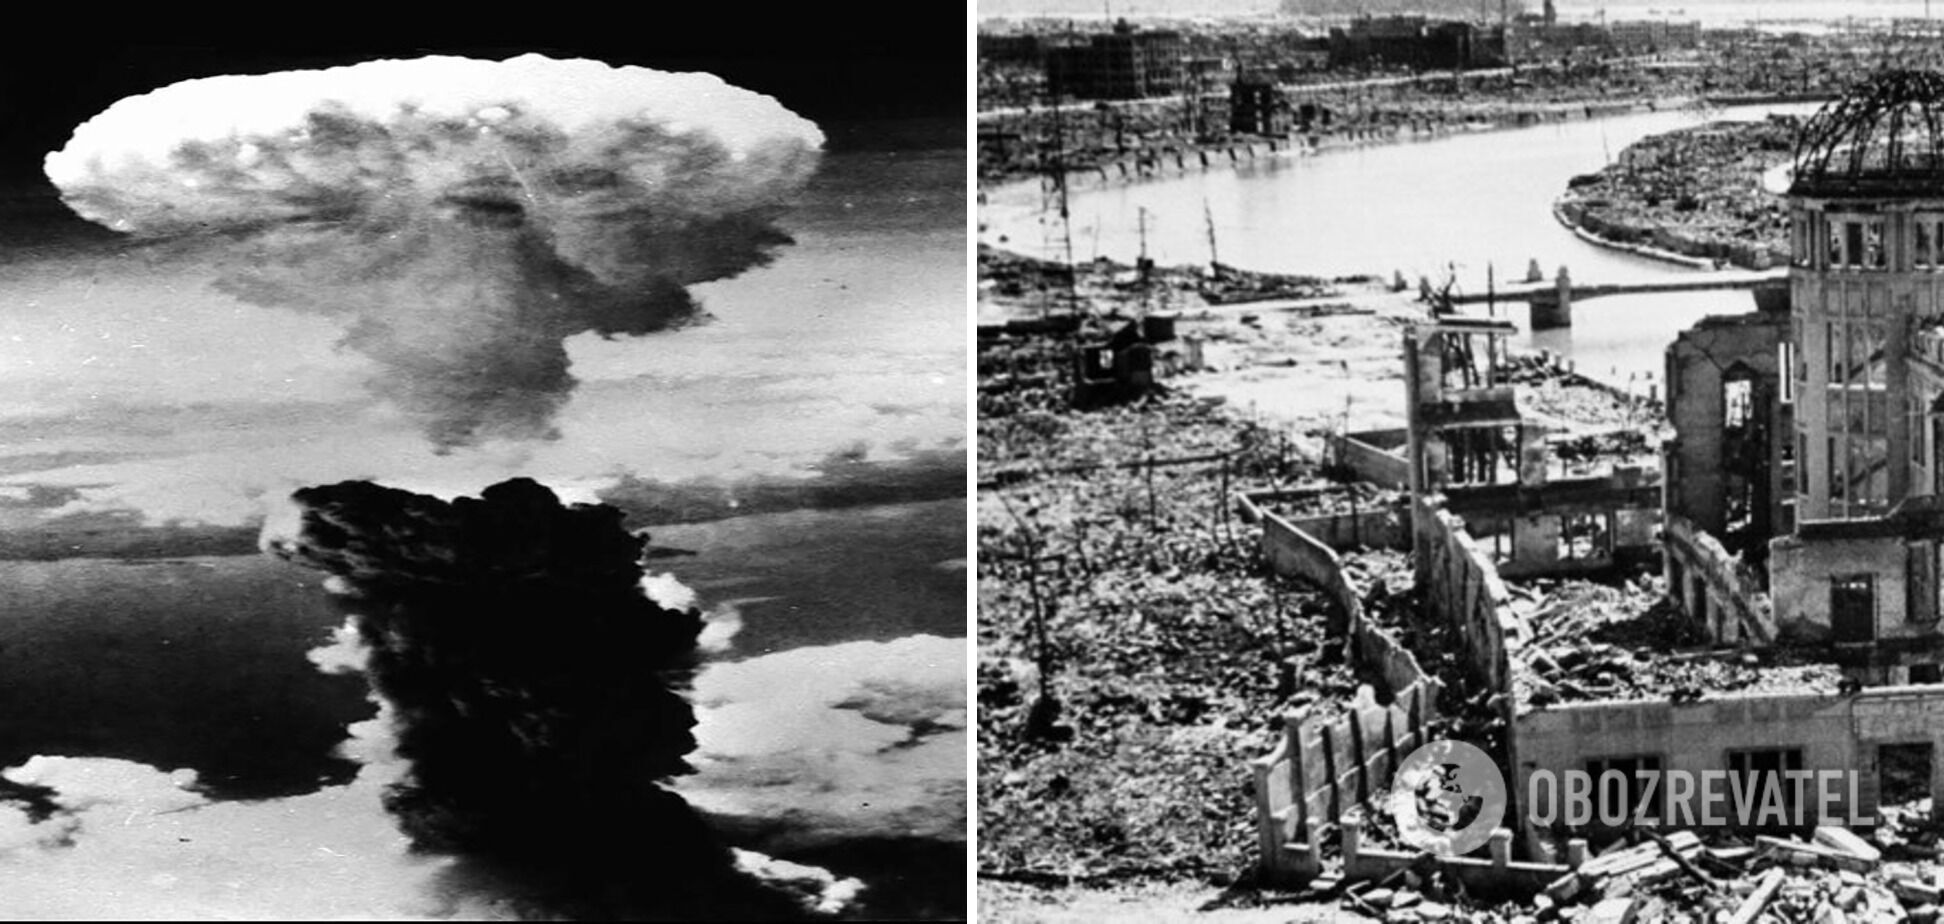 Нострадамус предсказал появление атомных бомб.